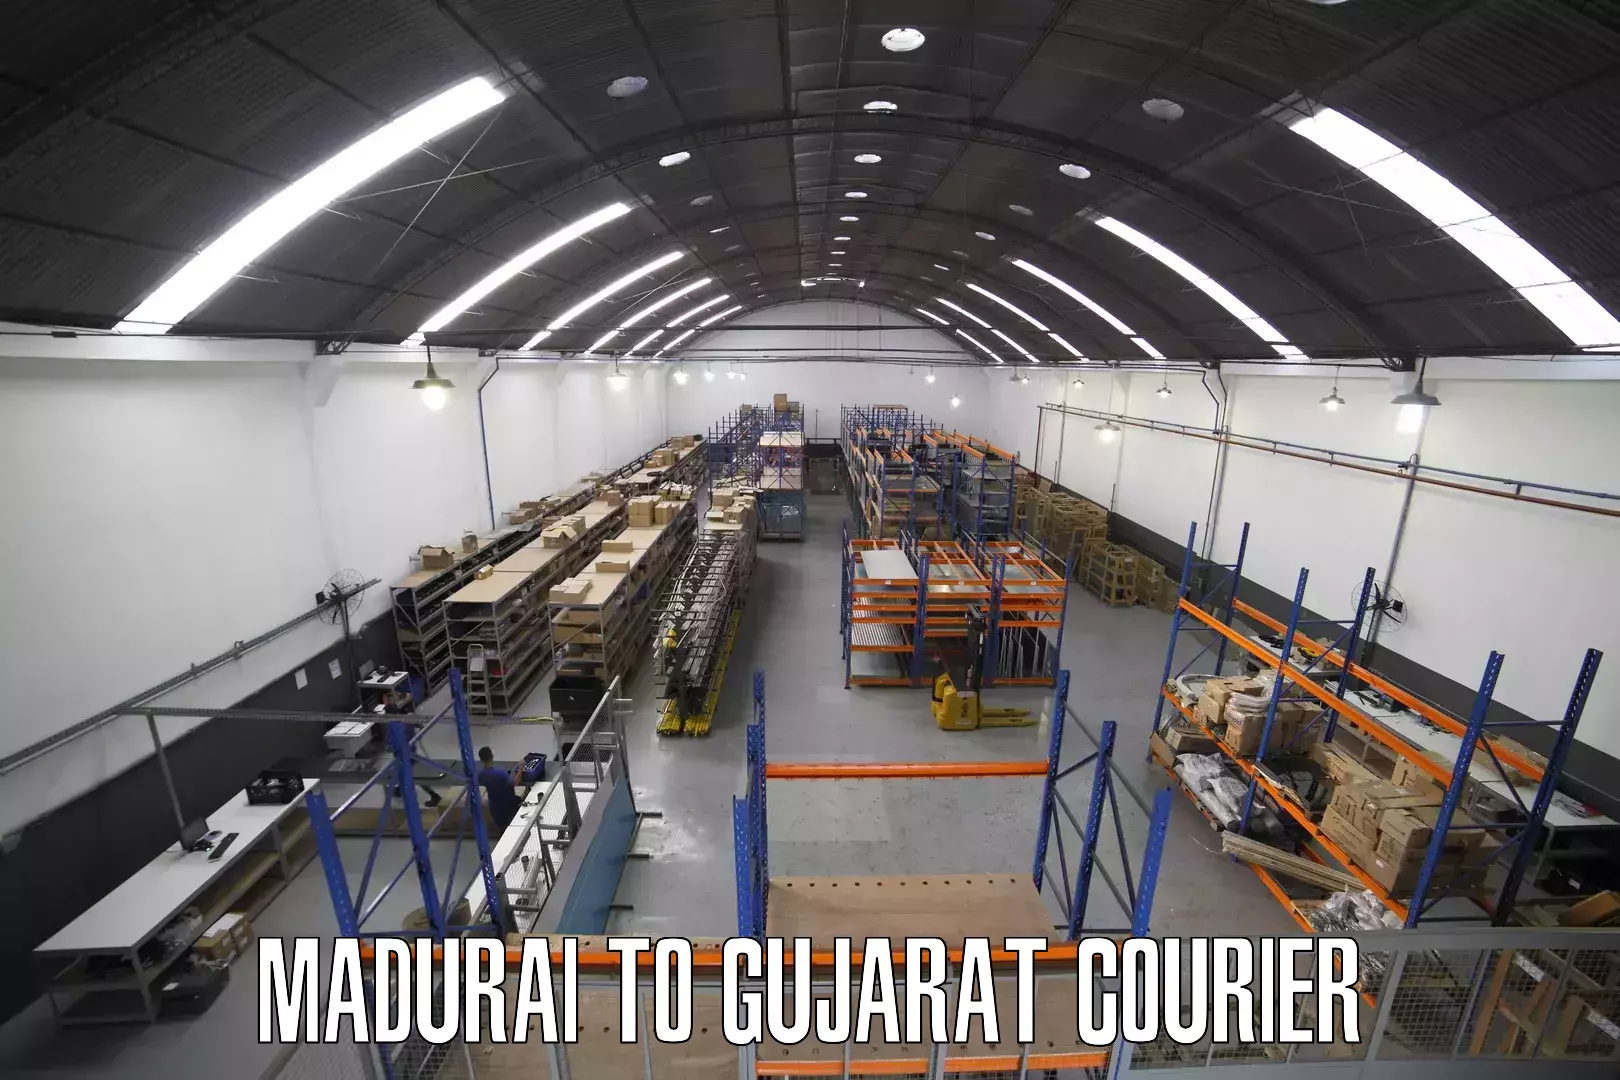 Courier service comparison Madurai to Junagadh